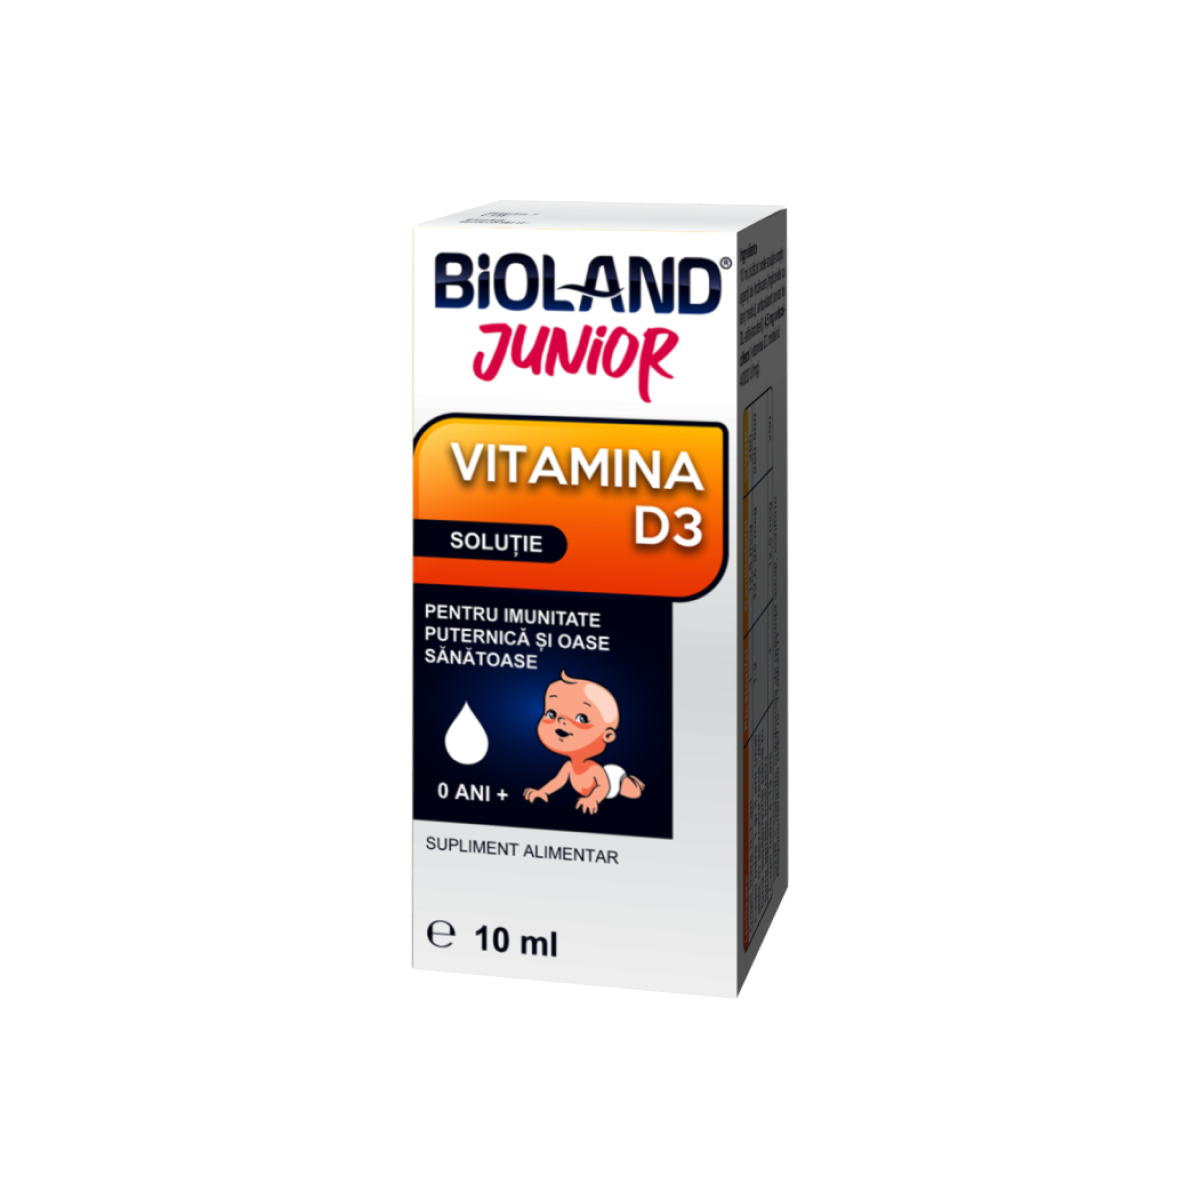 Bioland vitamina D3 Junior, solutie, 10 ml, Biofarm